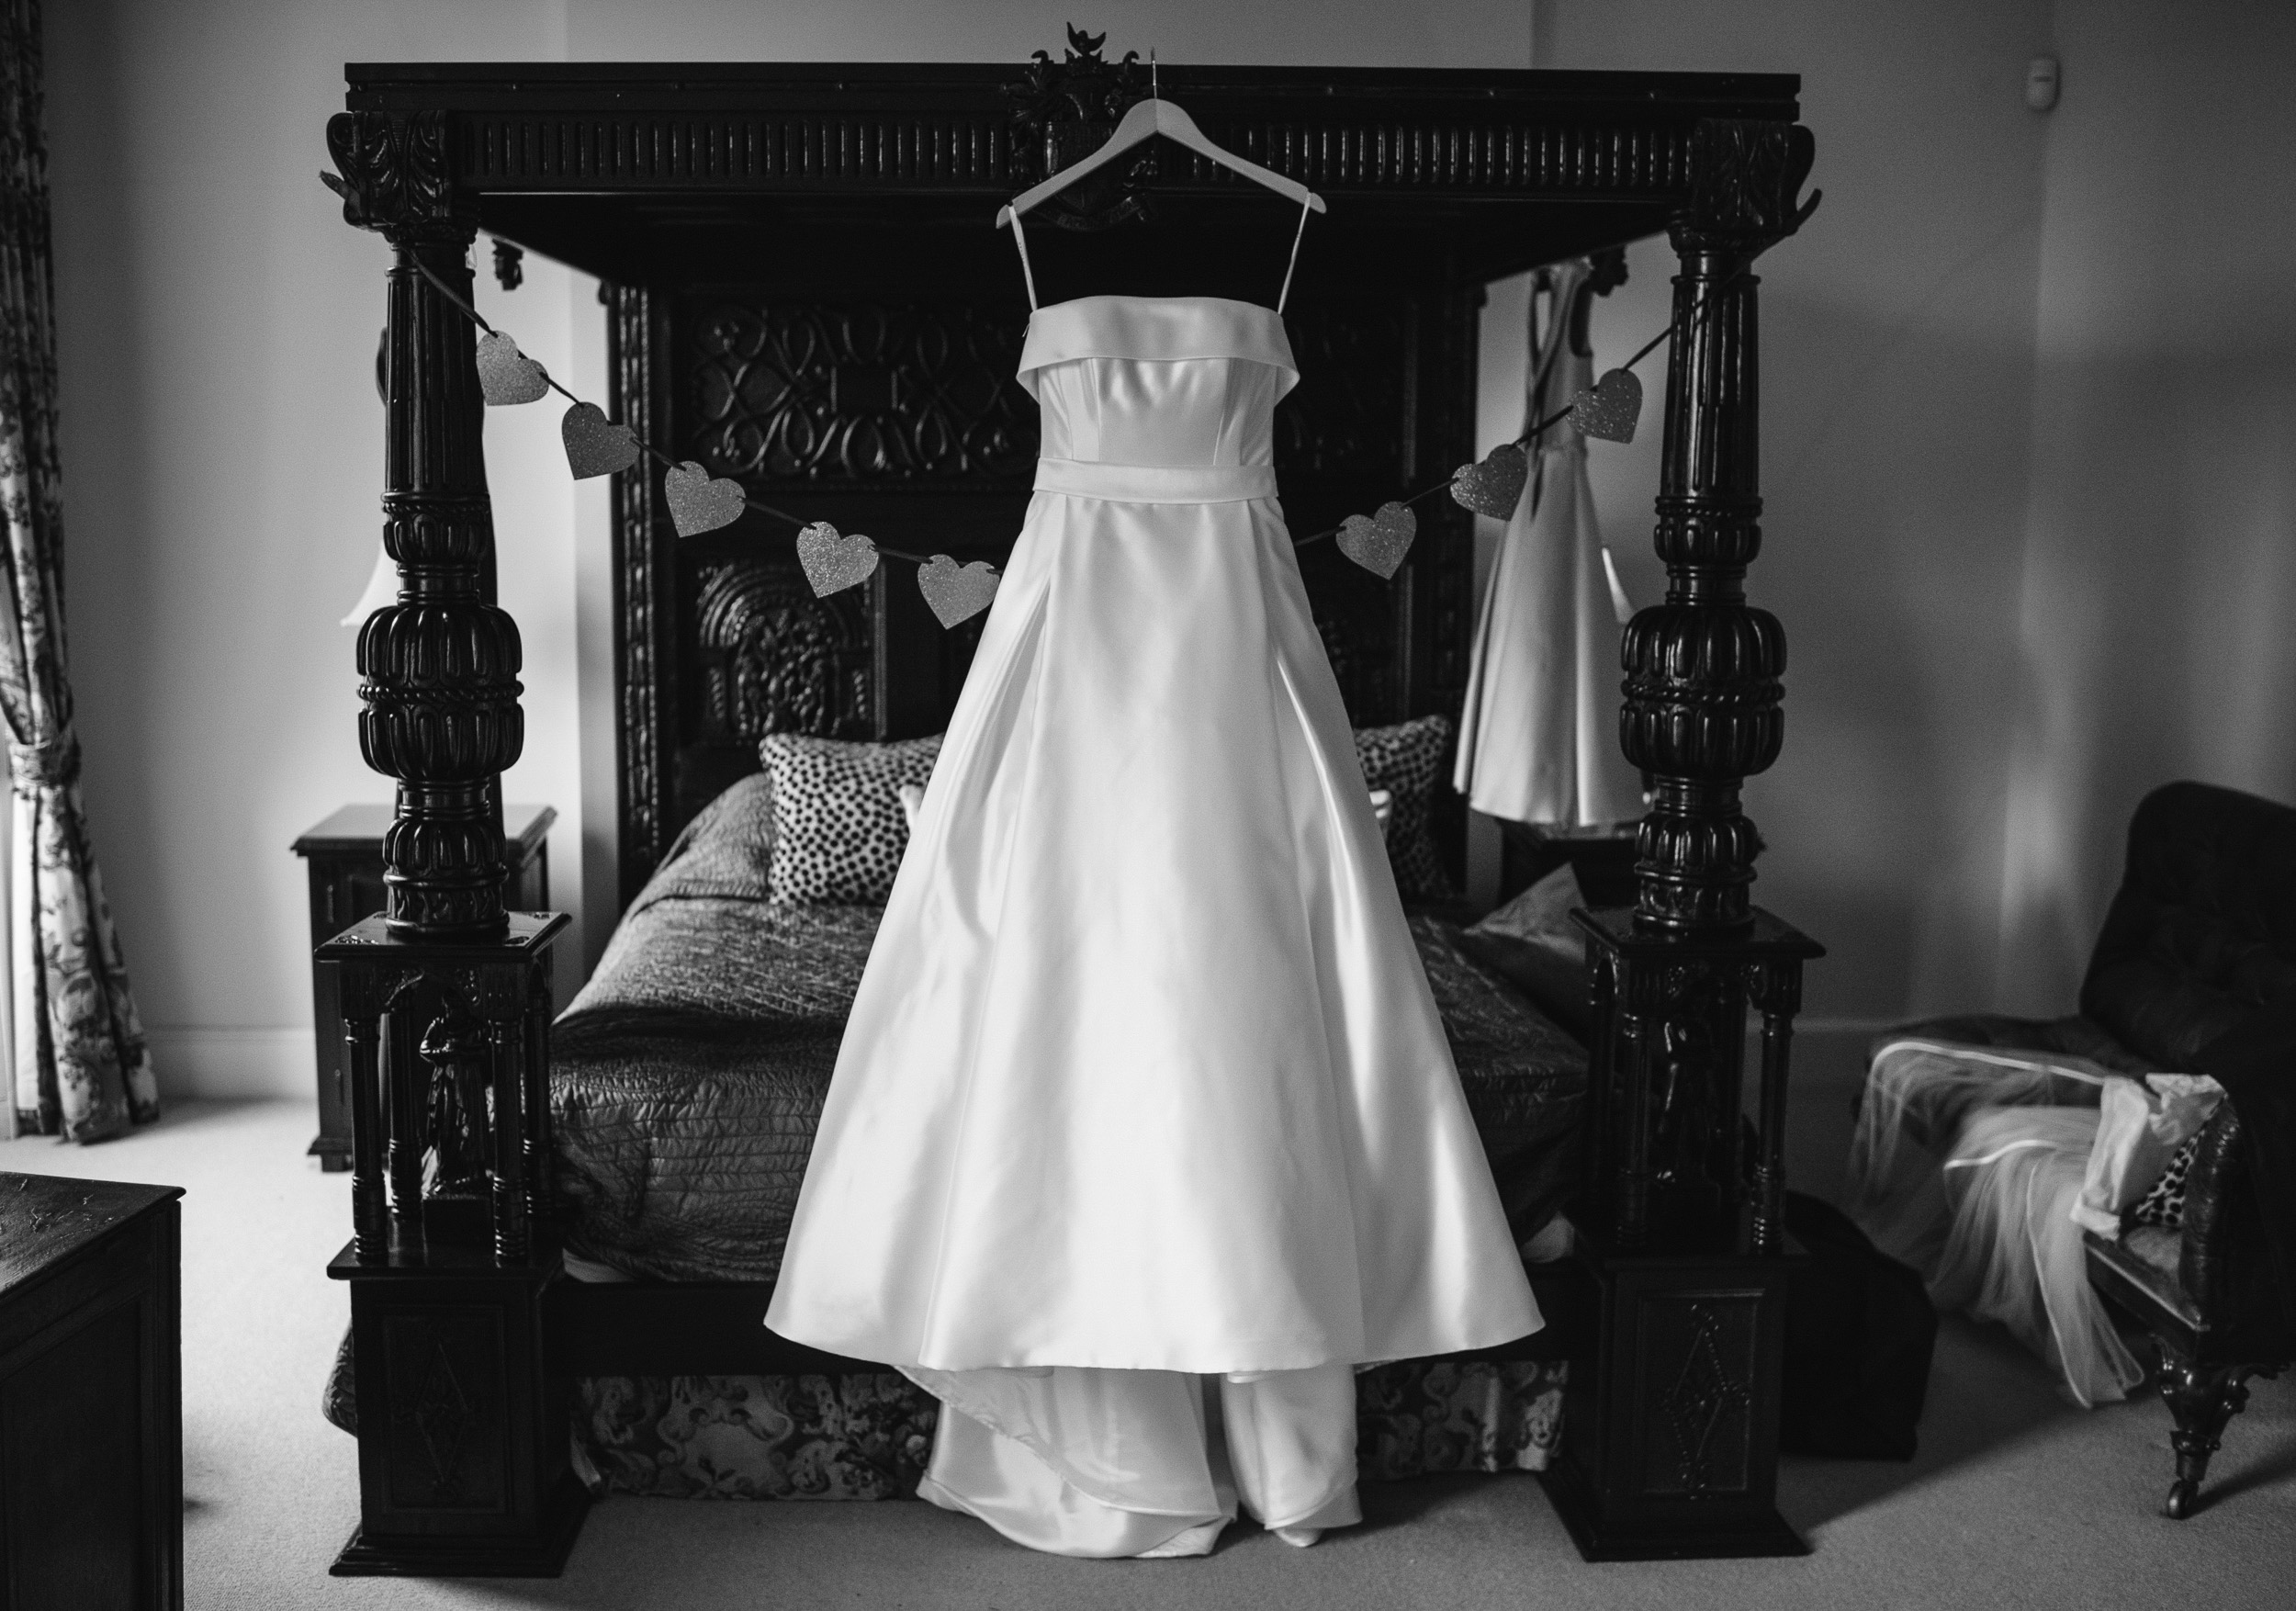 Hanging wedding dress